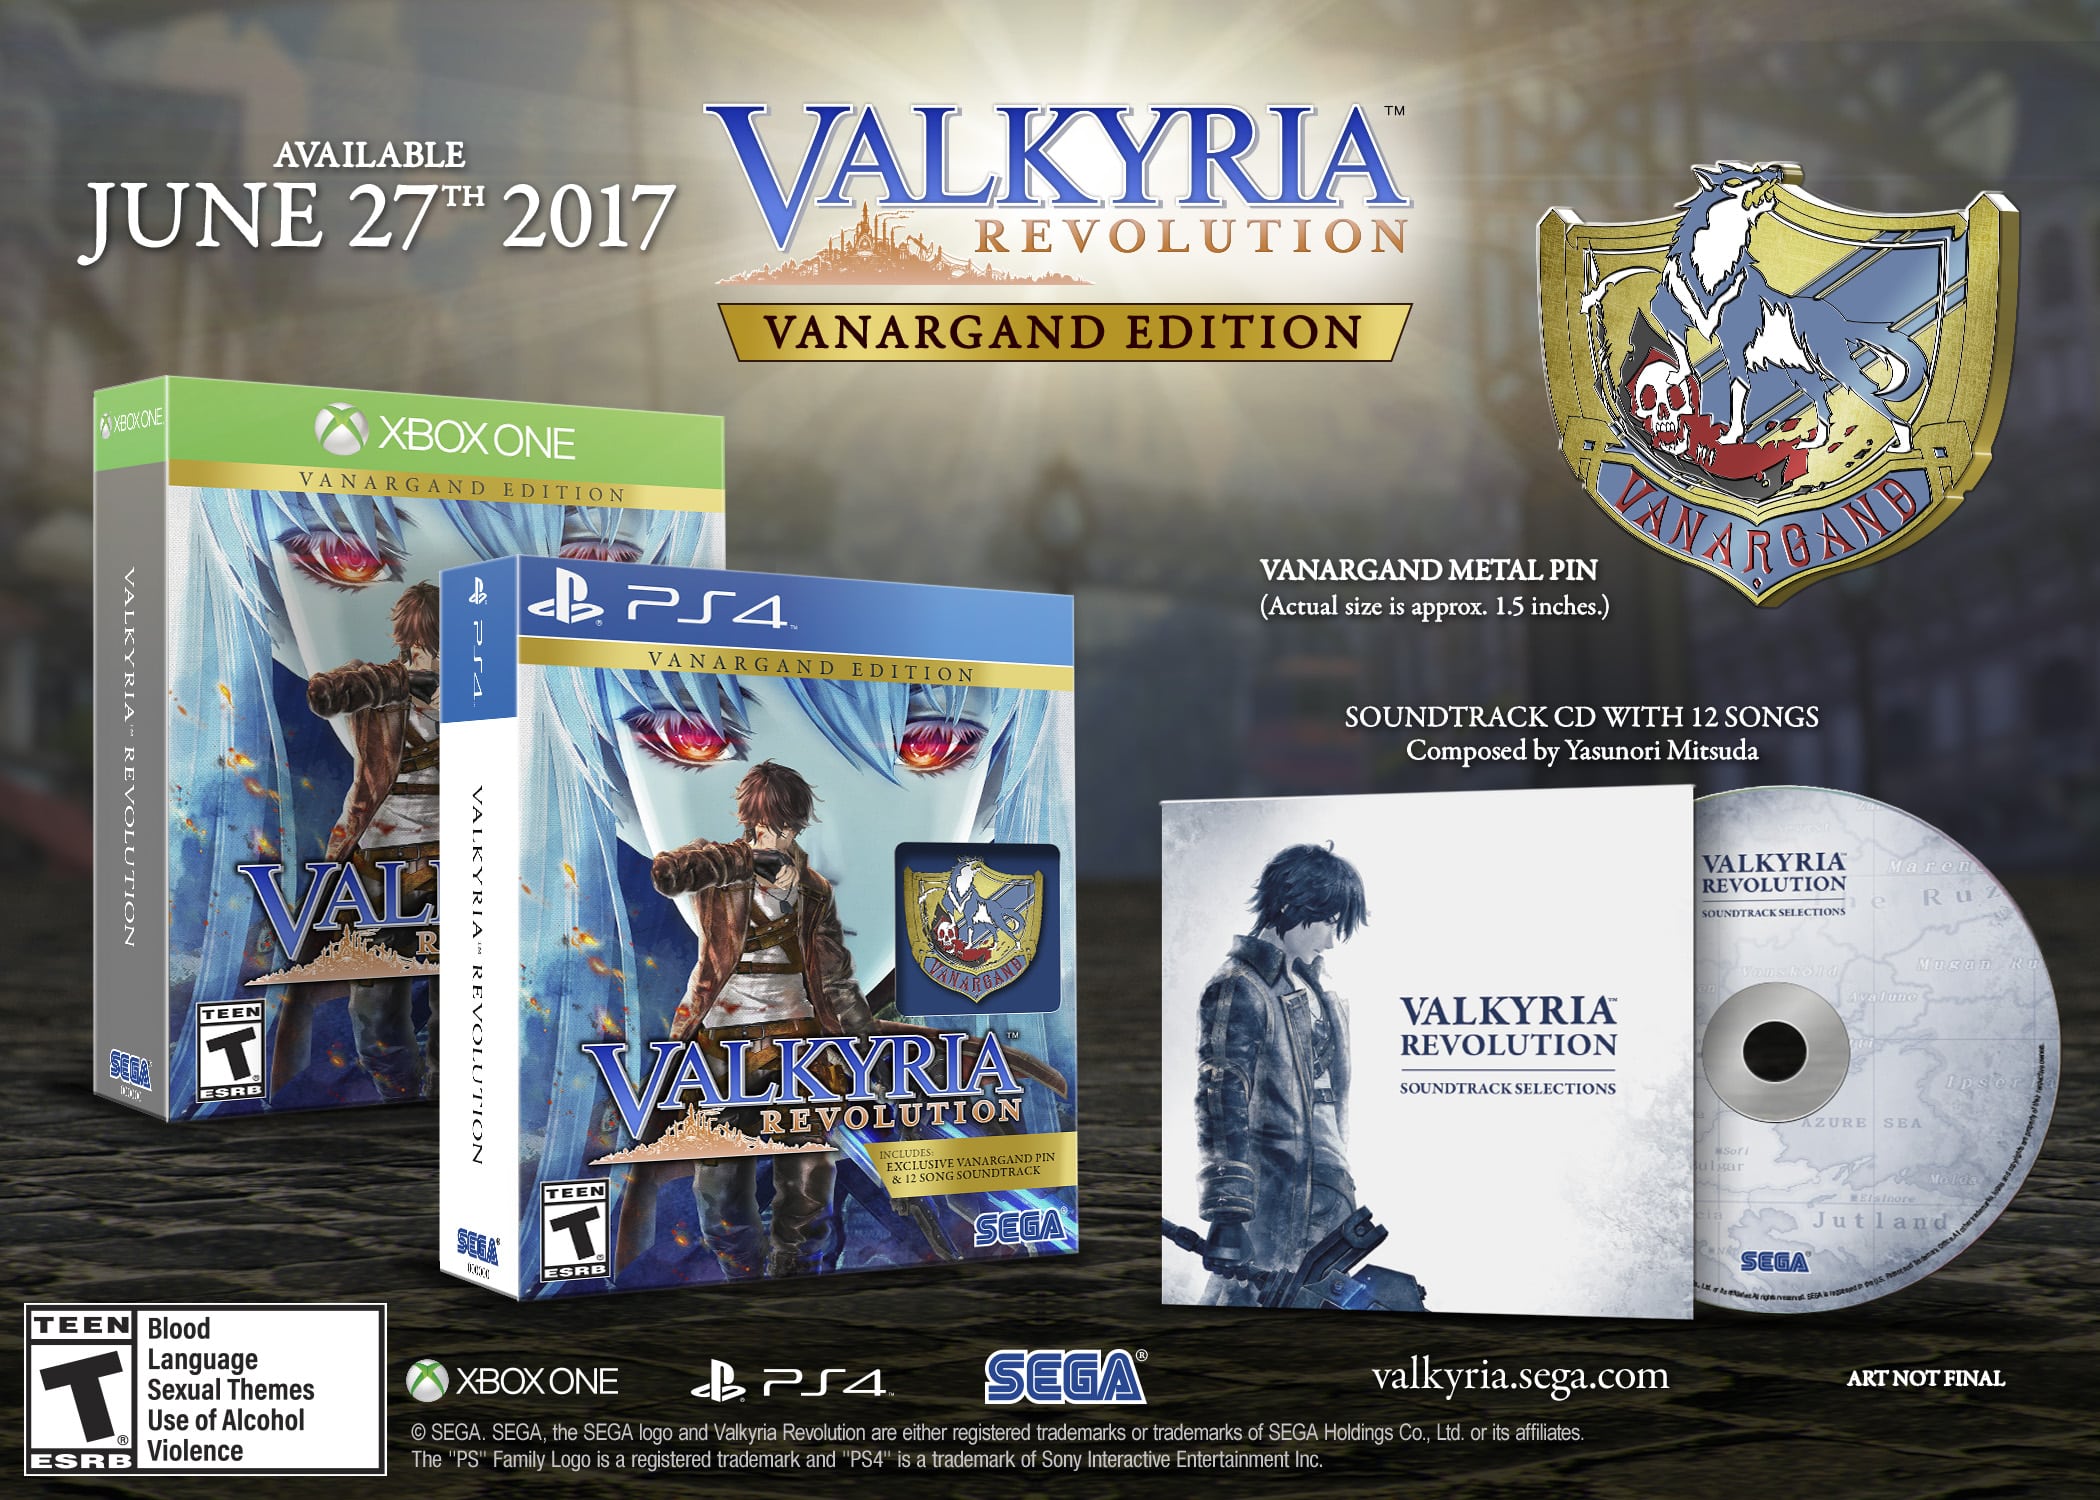 Valkyria Revolution Vanargand Edition